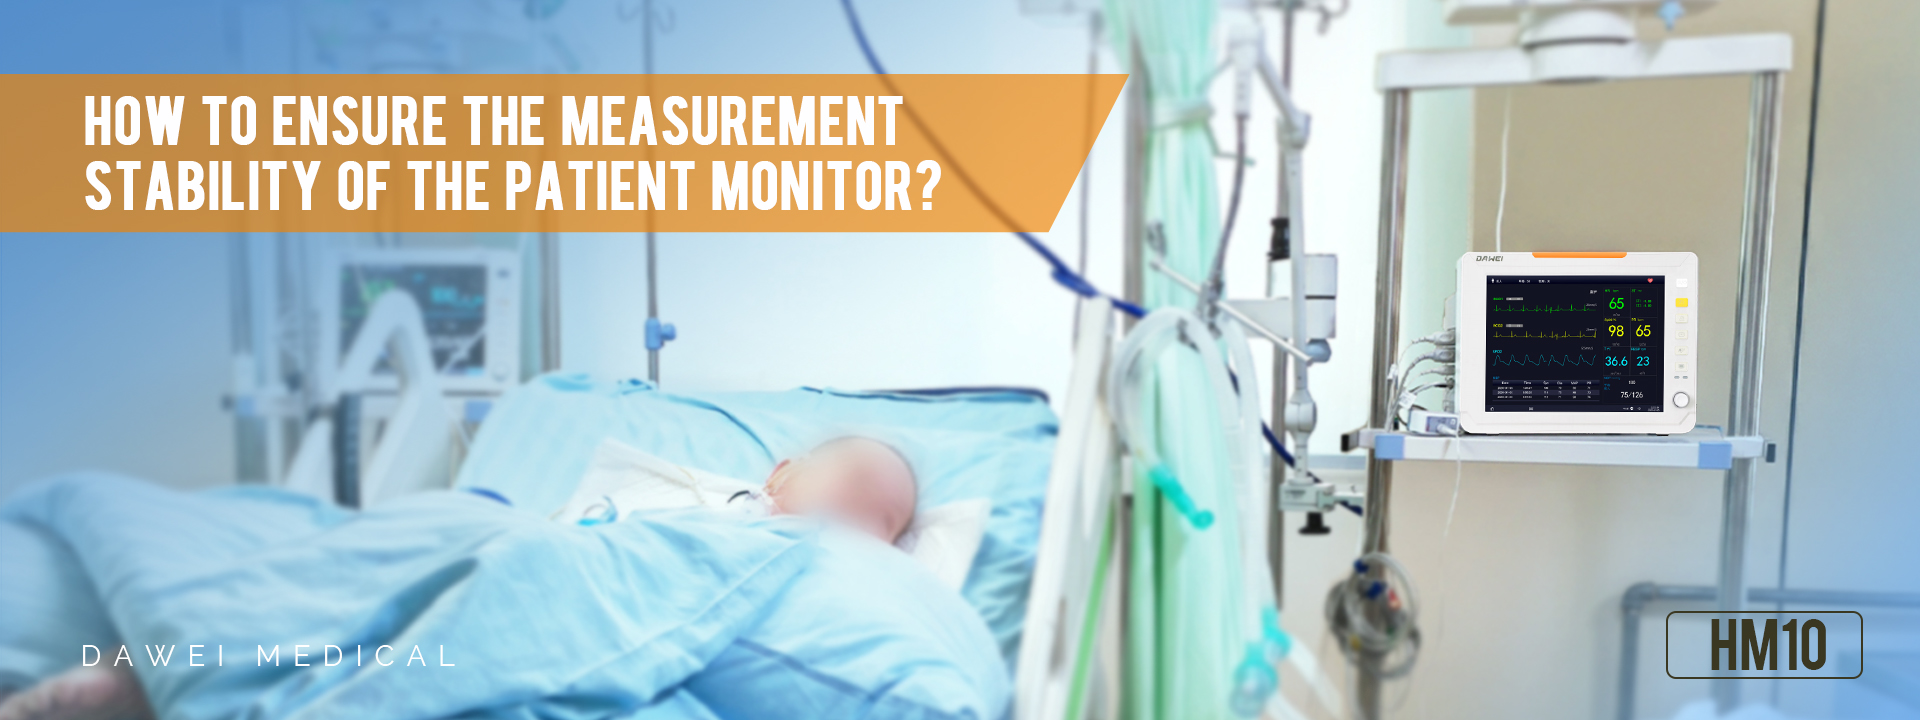 Cum se asigură stabilitatea măsurătorii unui monitor pentru pacient?